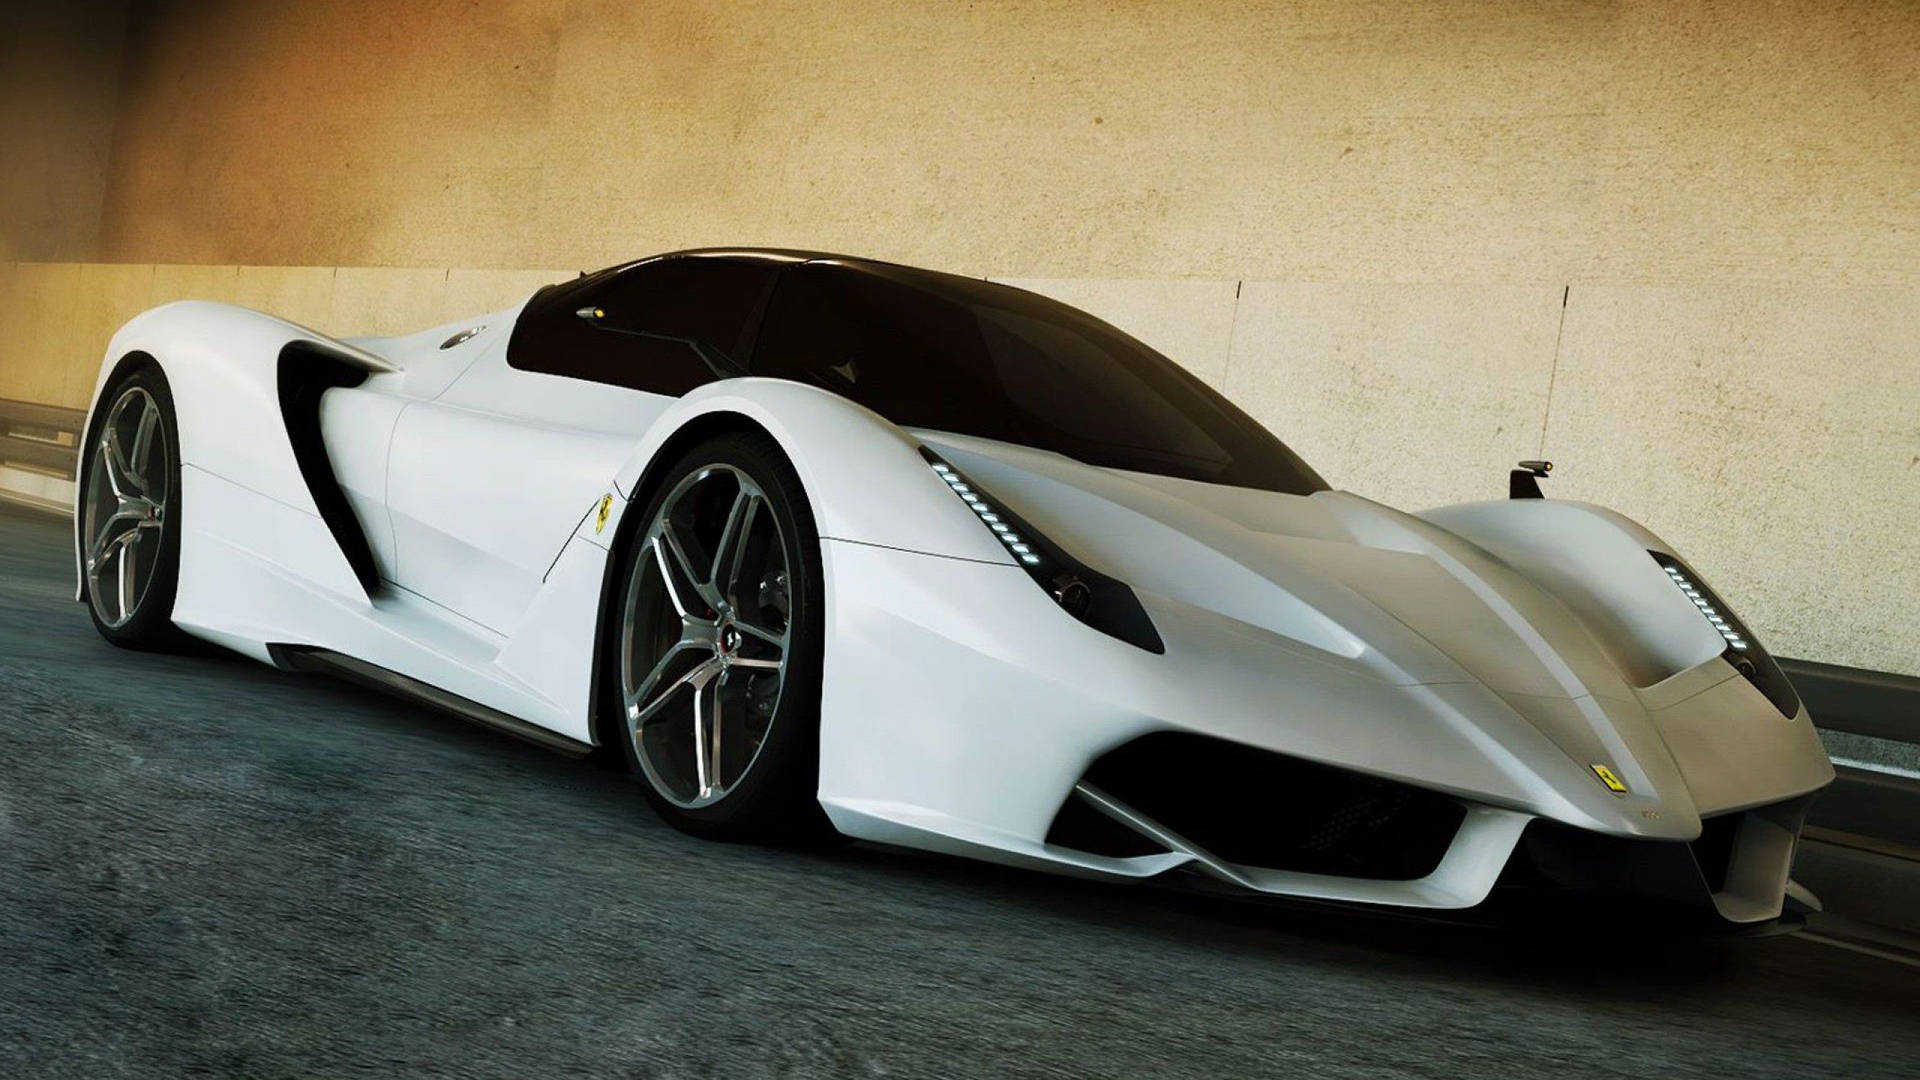 White Ferrari Supercar